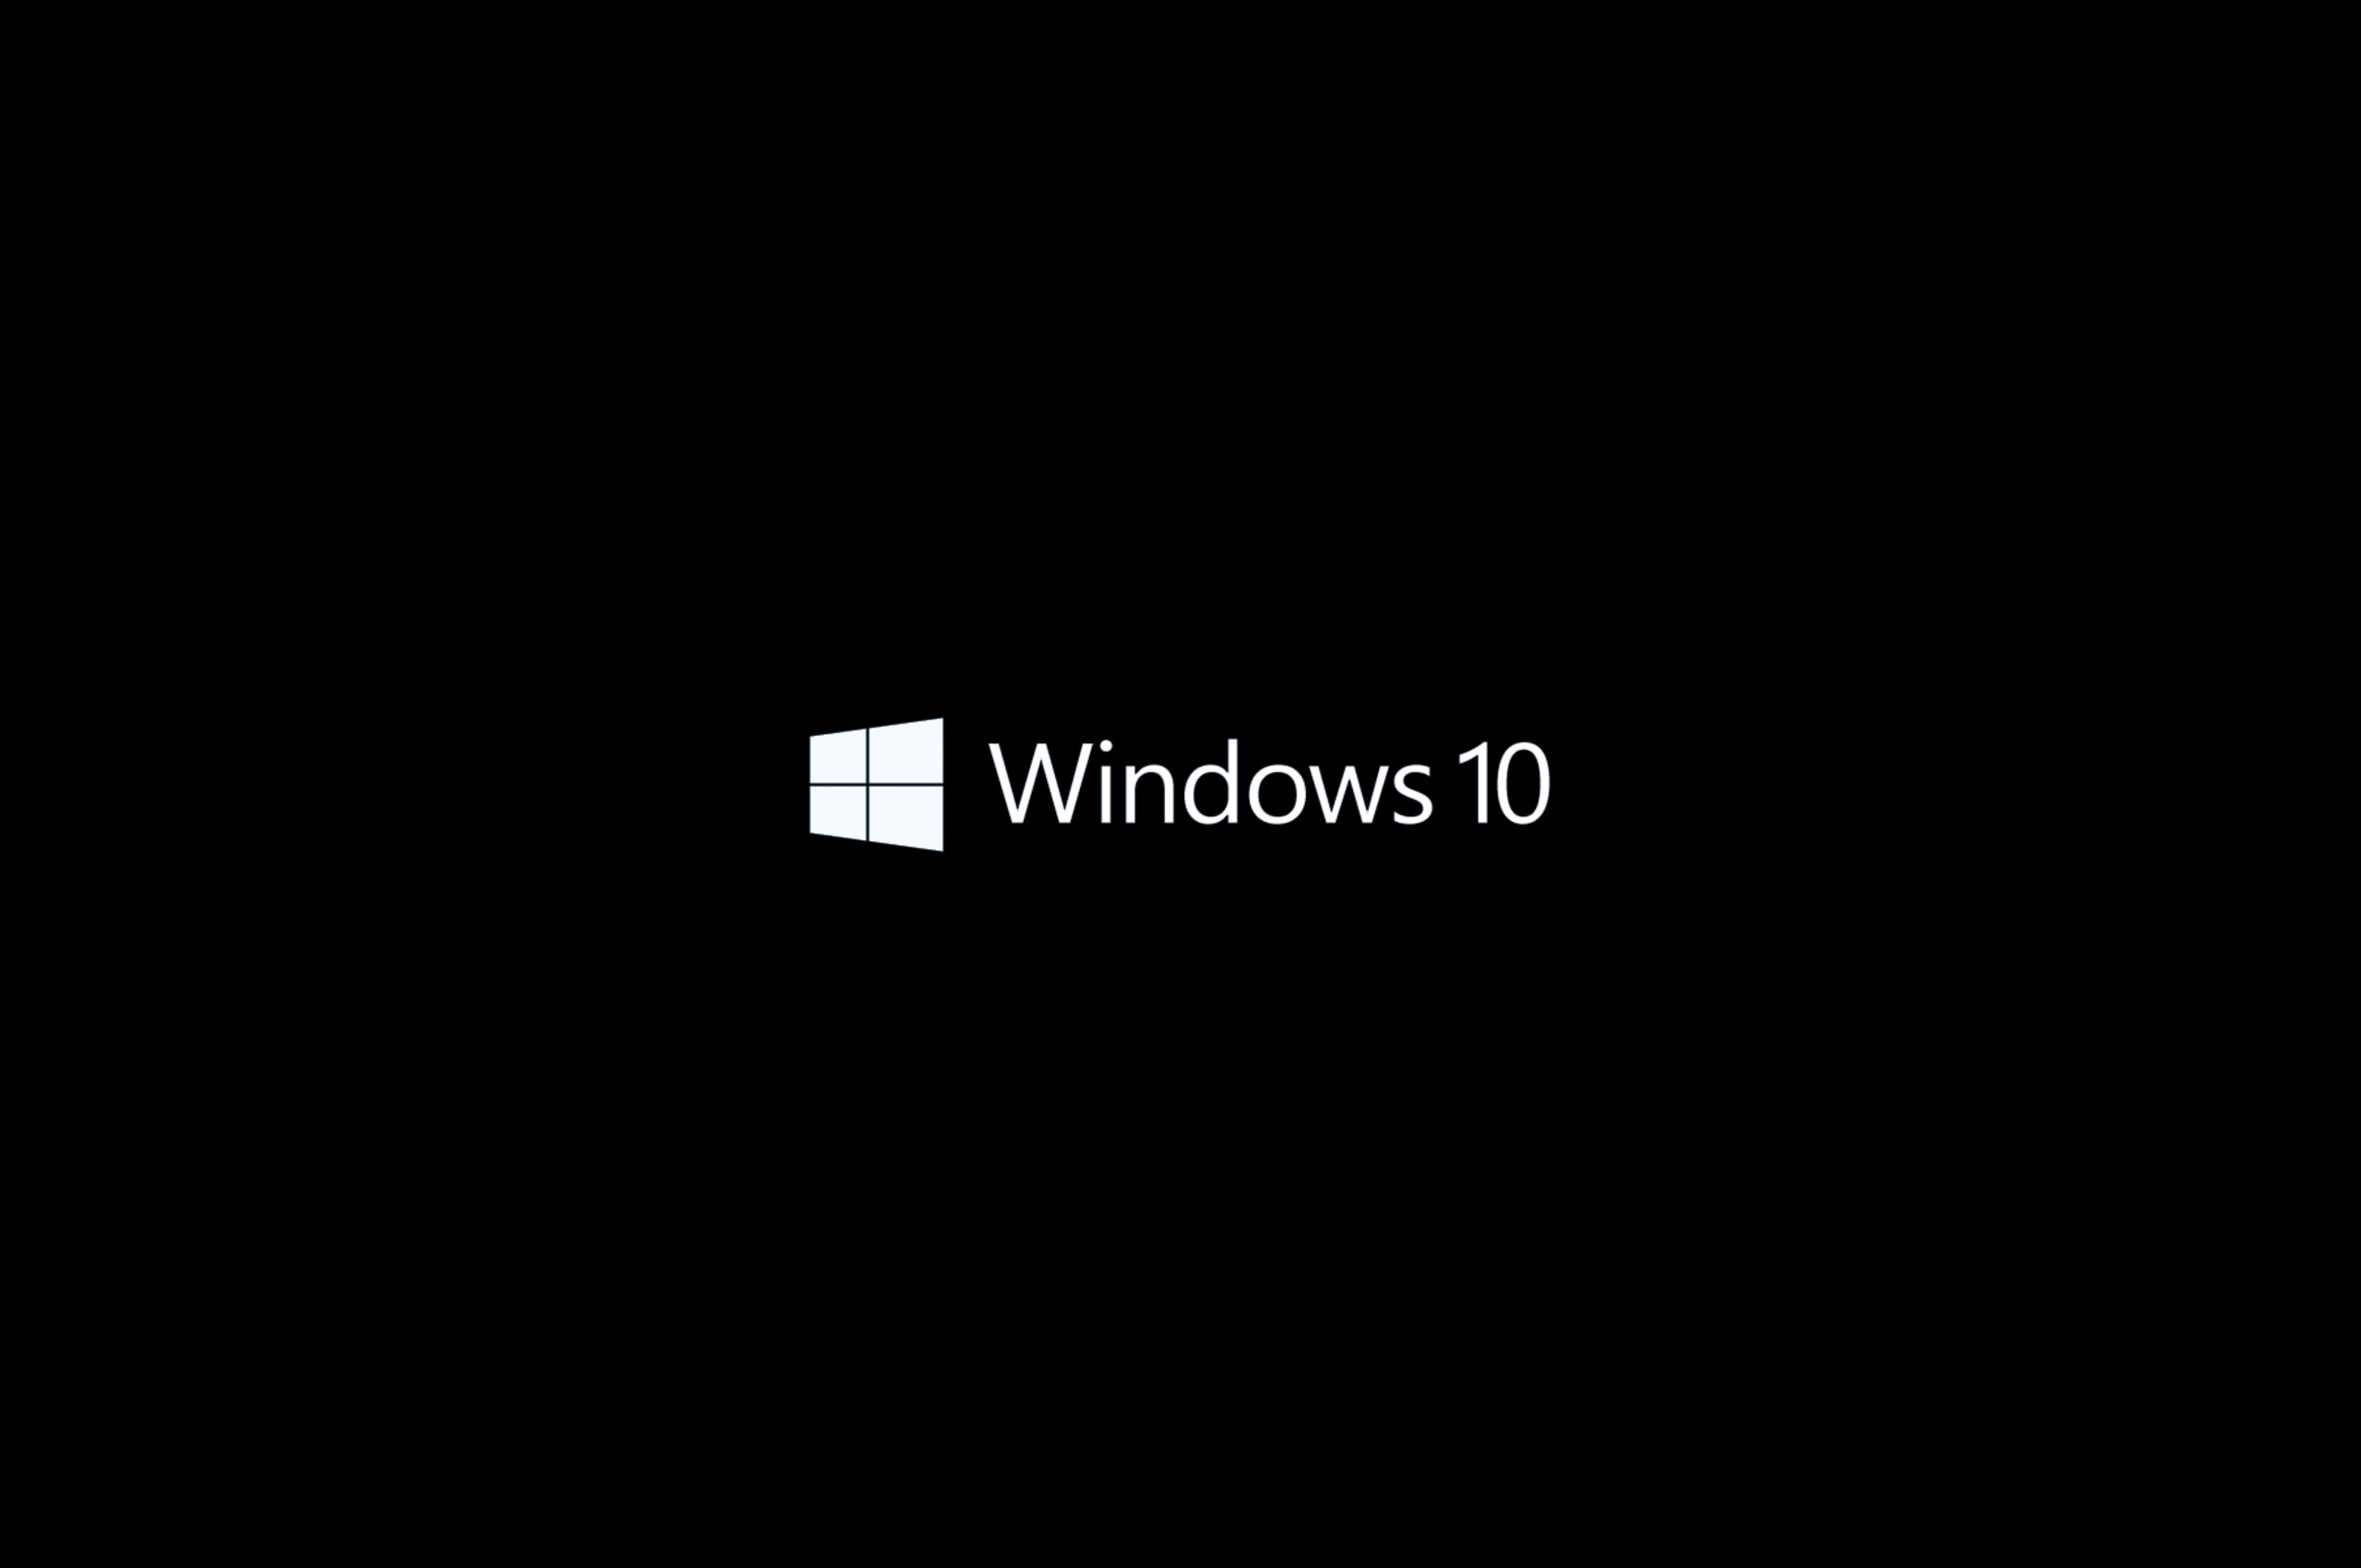 Loading windows 10. Загрузка виндовс 10. Загрузка Windows 10 gif. Запуск виндовс 10. Экран запуска виндовс.